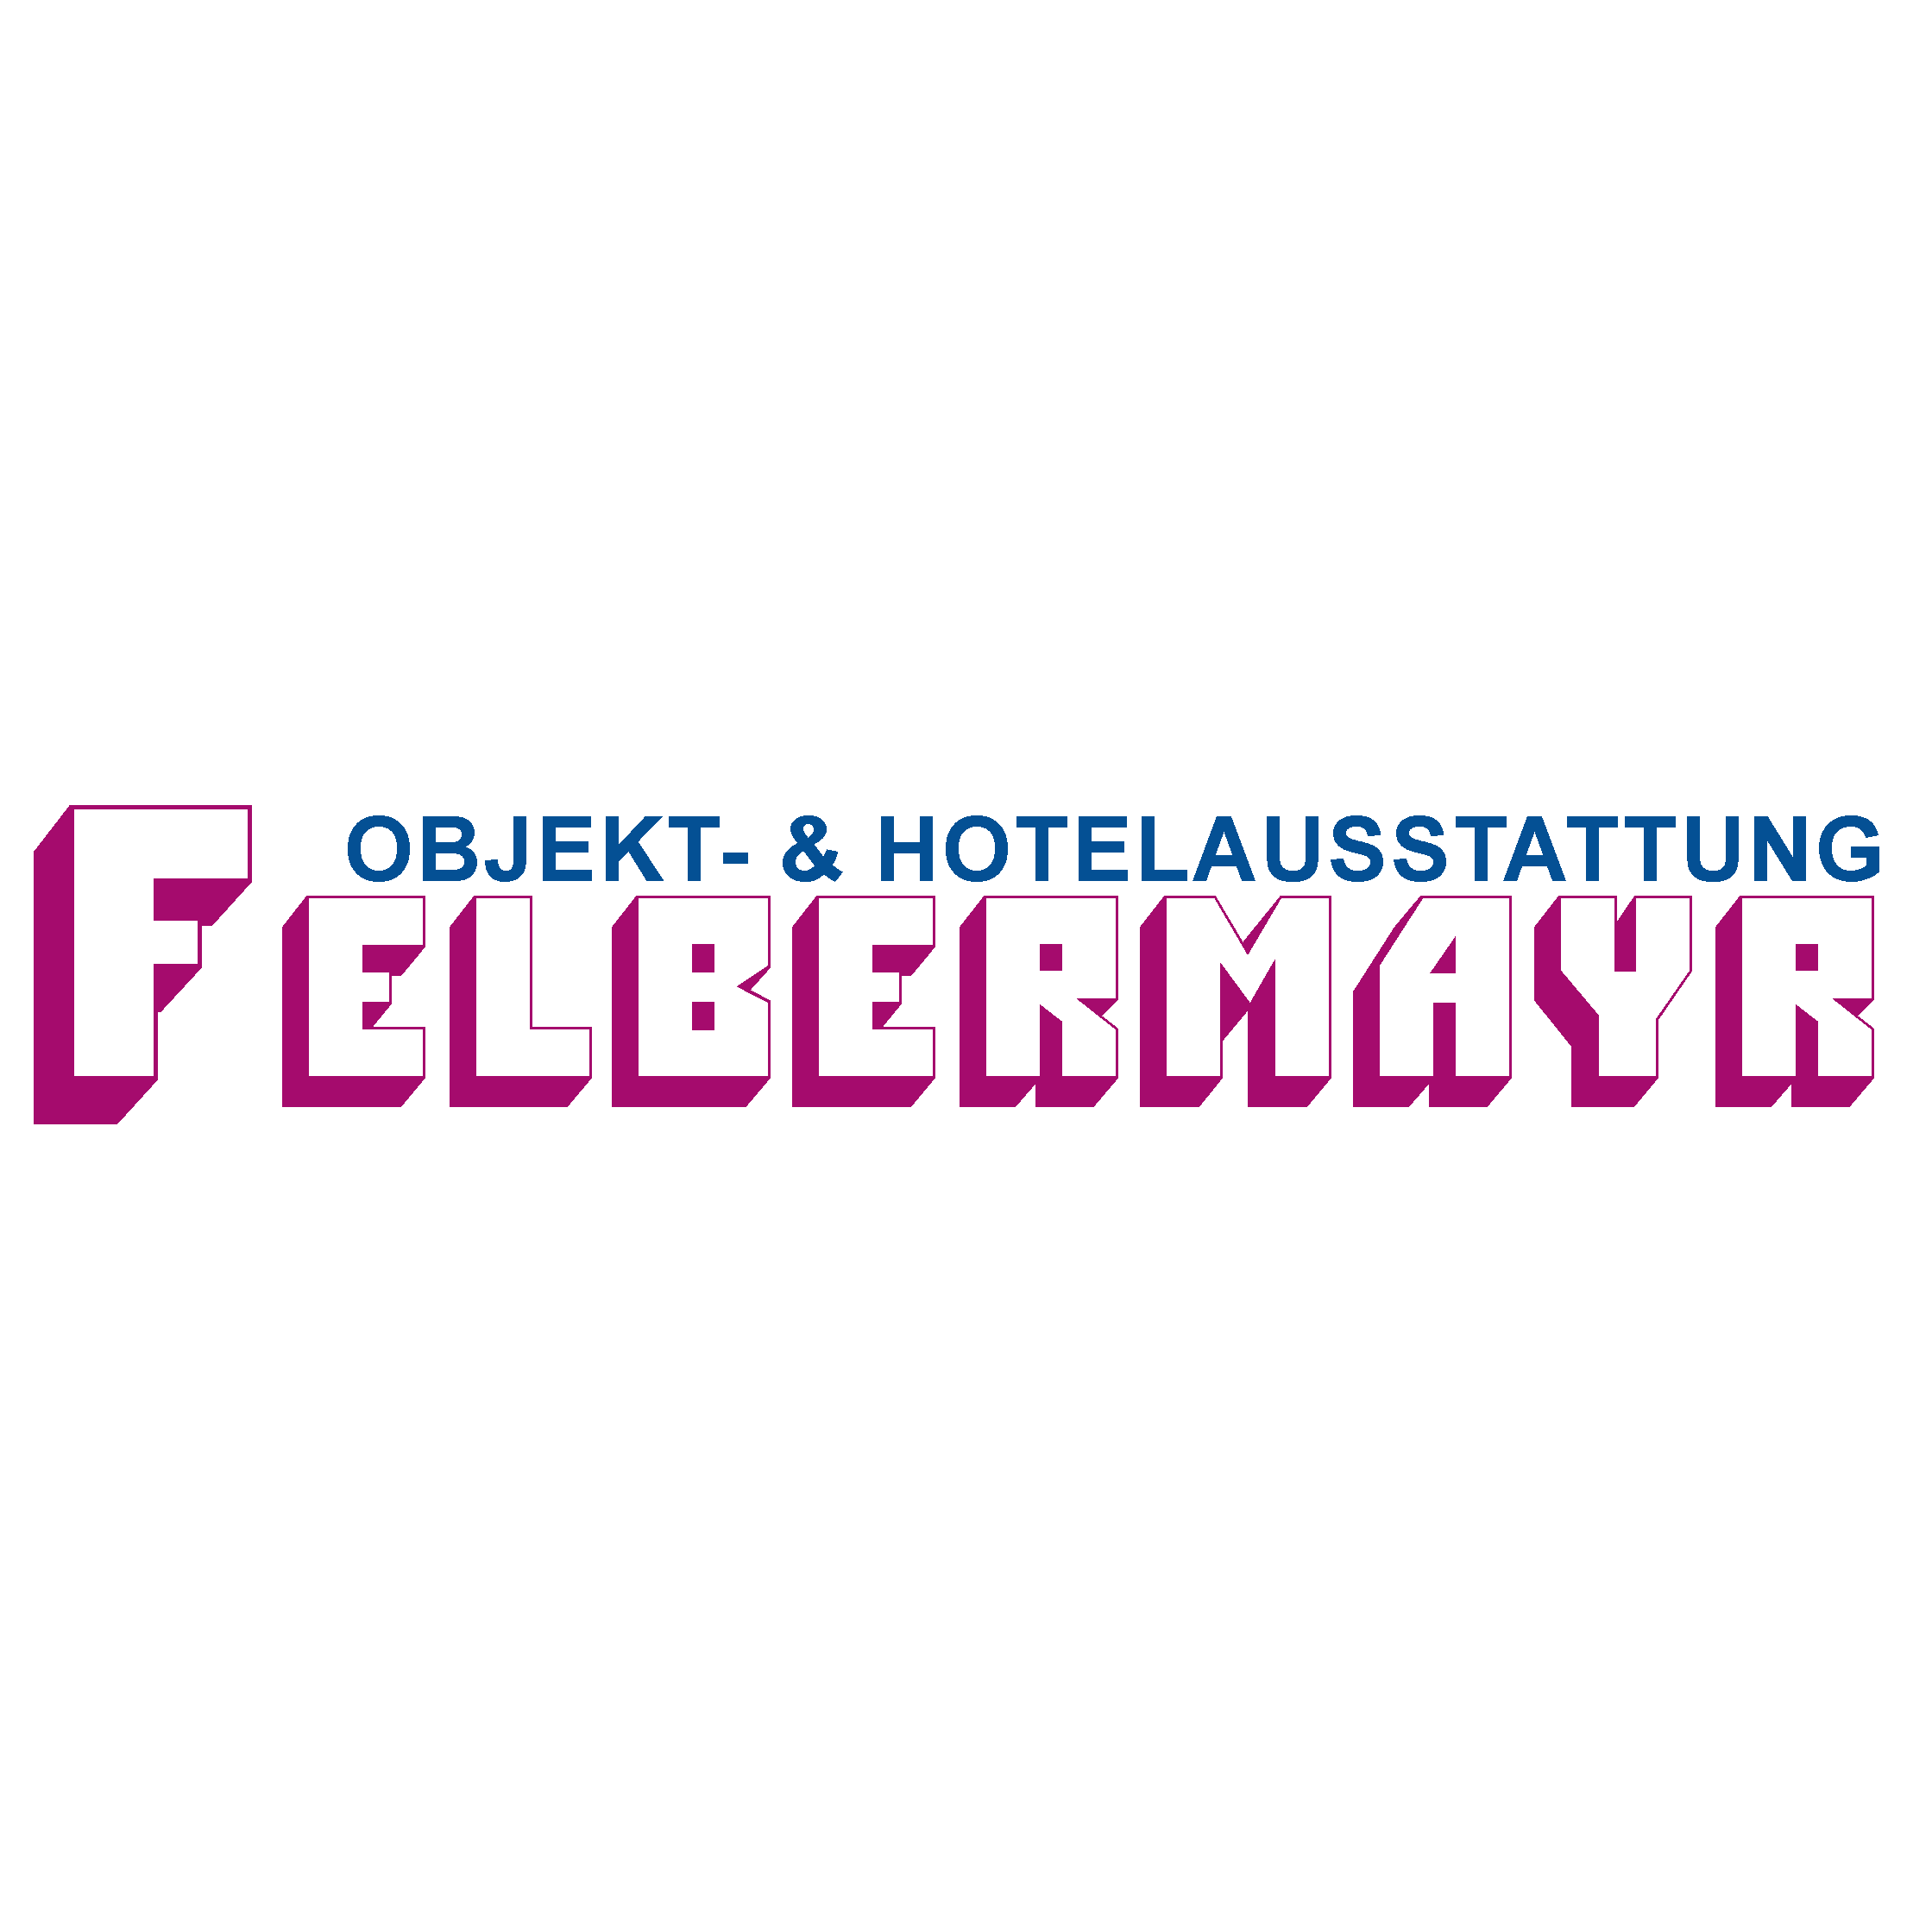 Objekt- & Hotelausstattung Felbermayr GmbH Logo